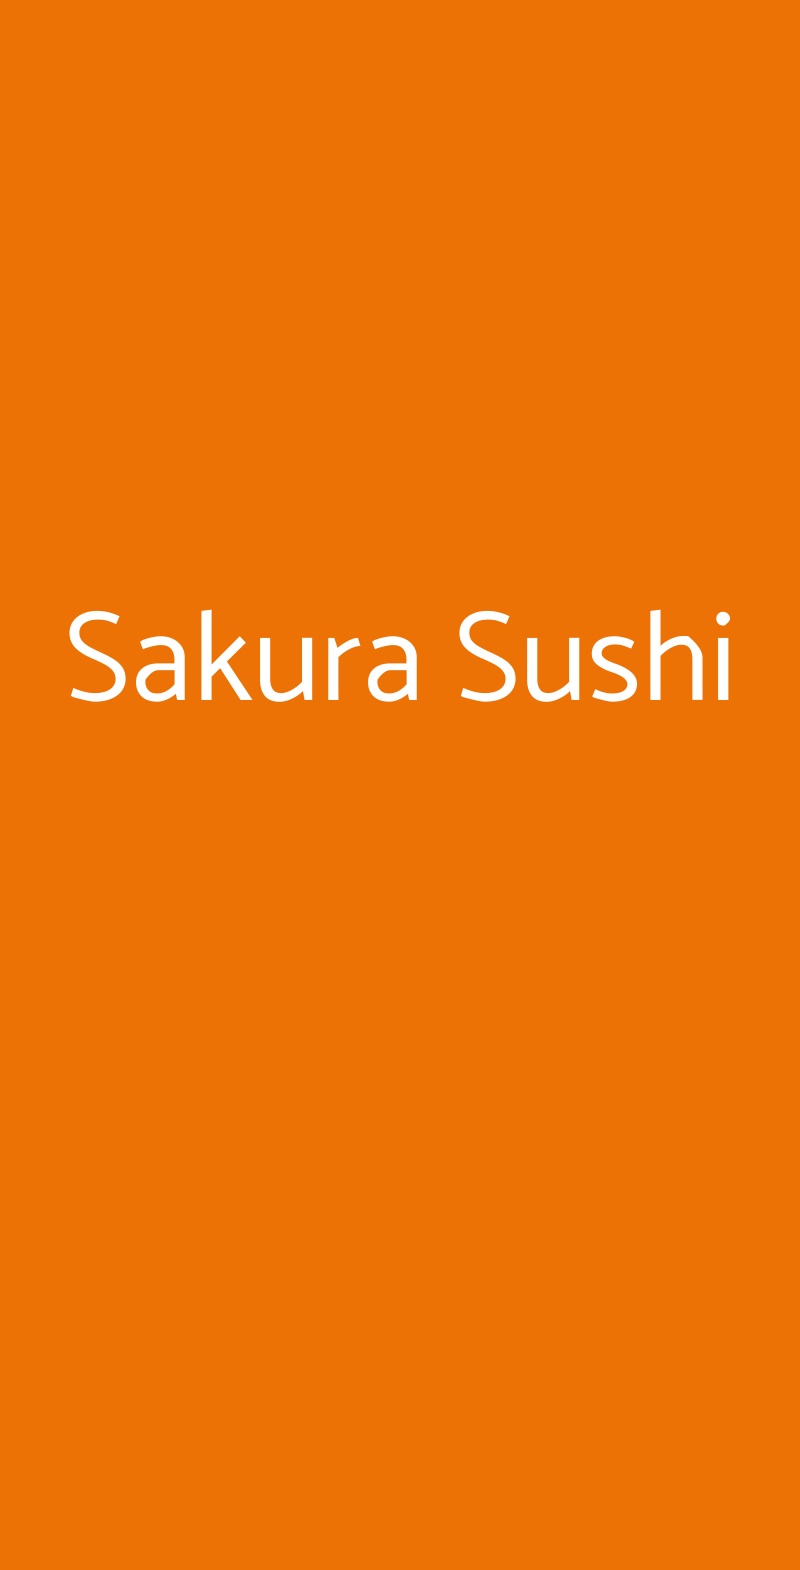 Sakura Sushi Milano menù 1 pagina